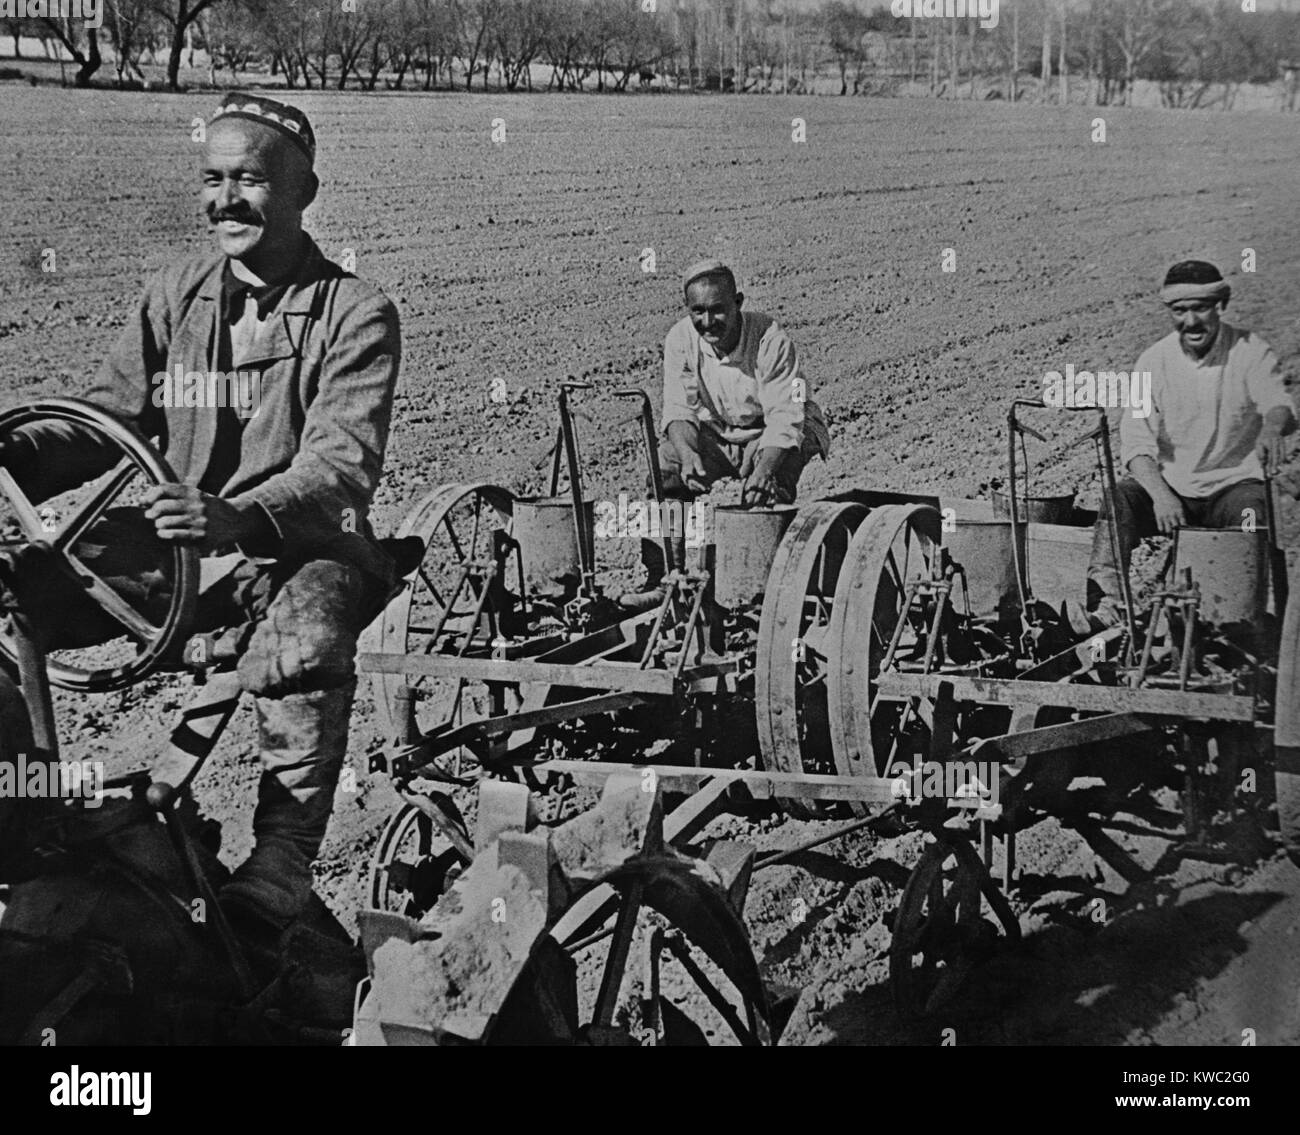 Baumwolle auf der Kolchose, in der Nähe von Taschkent, UdSSR konnte das Einpflanzen. Ca. 1935-40. (BSLOC 2015 2 257) Stockfoto